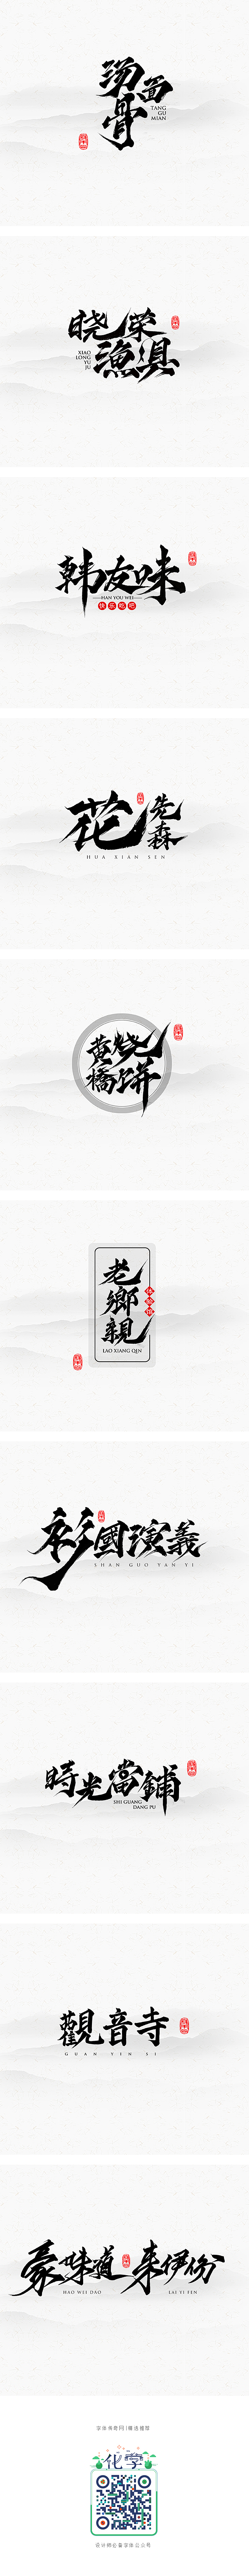 字体标志合辑-字体传奇网-中国首个字体品...